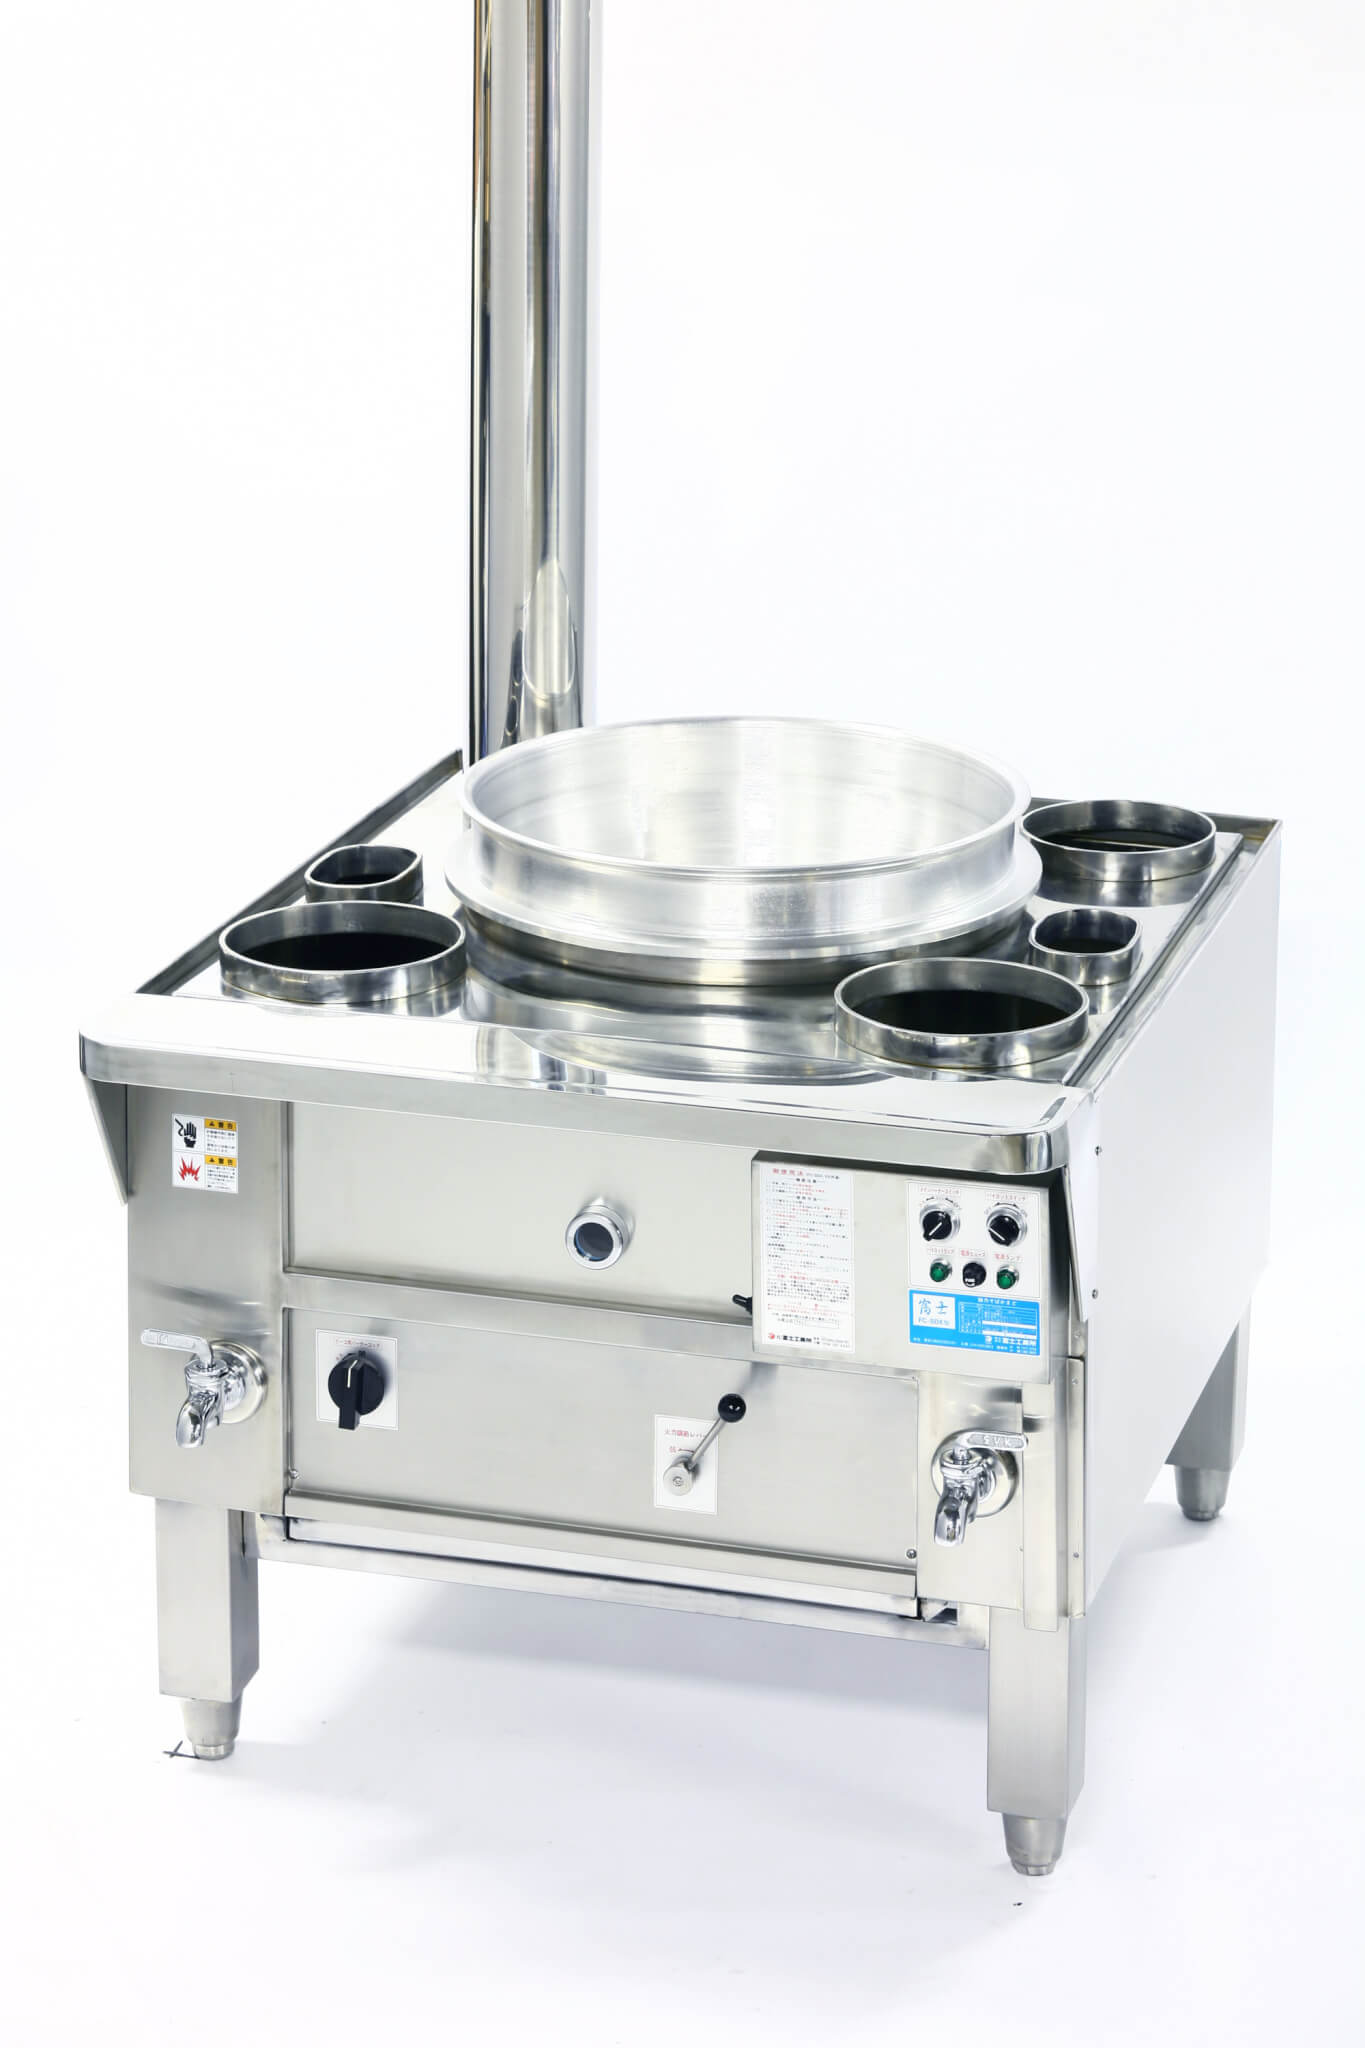 66%OFF!】 三省堂実業涼厨角槽型ゆで麺機 厨房機器 調理機器 MRY-03 W255 D700 H800 mm